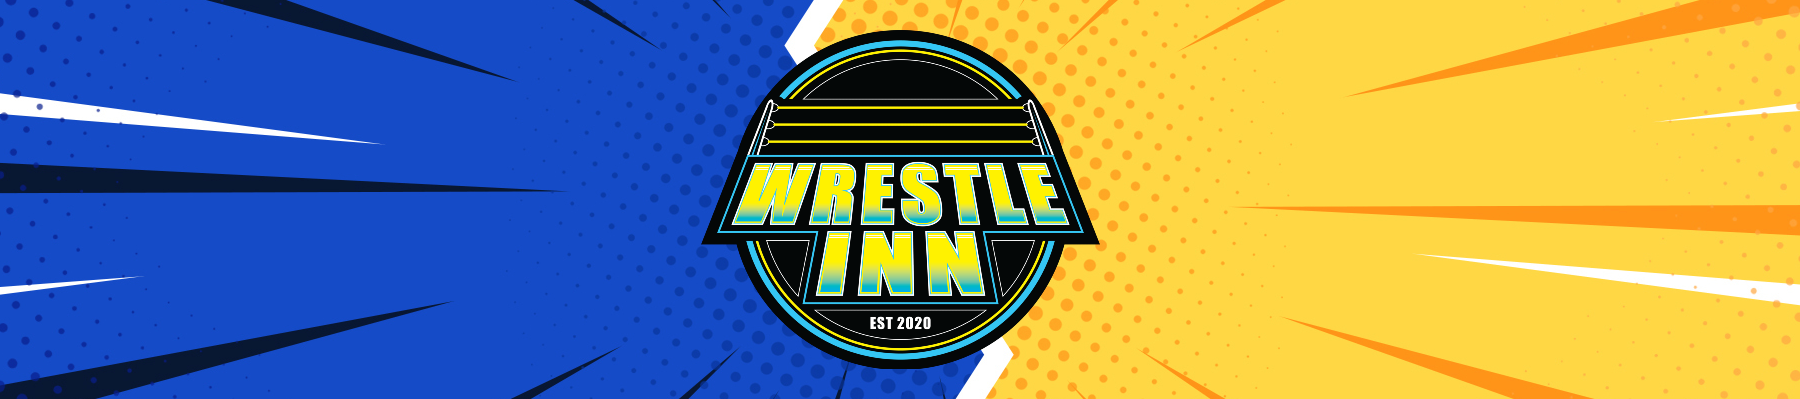 Wrestle Inn